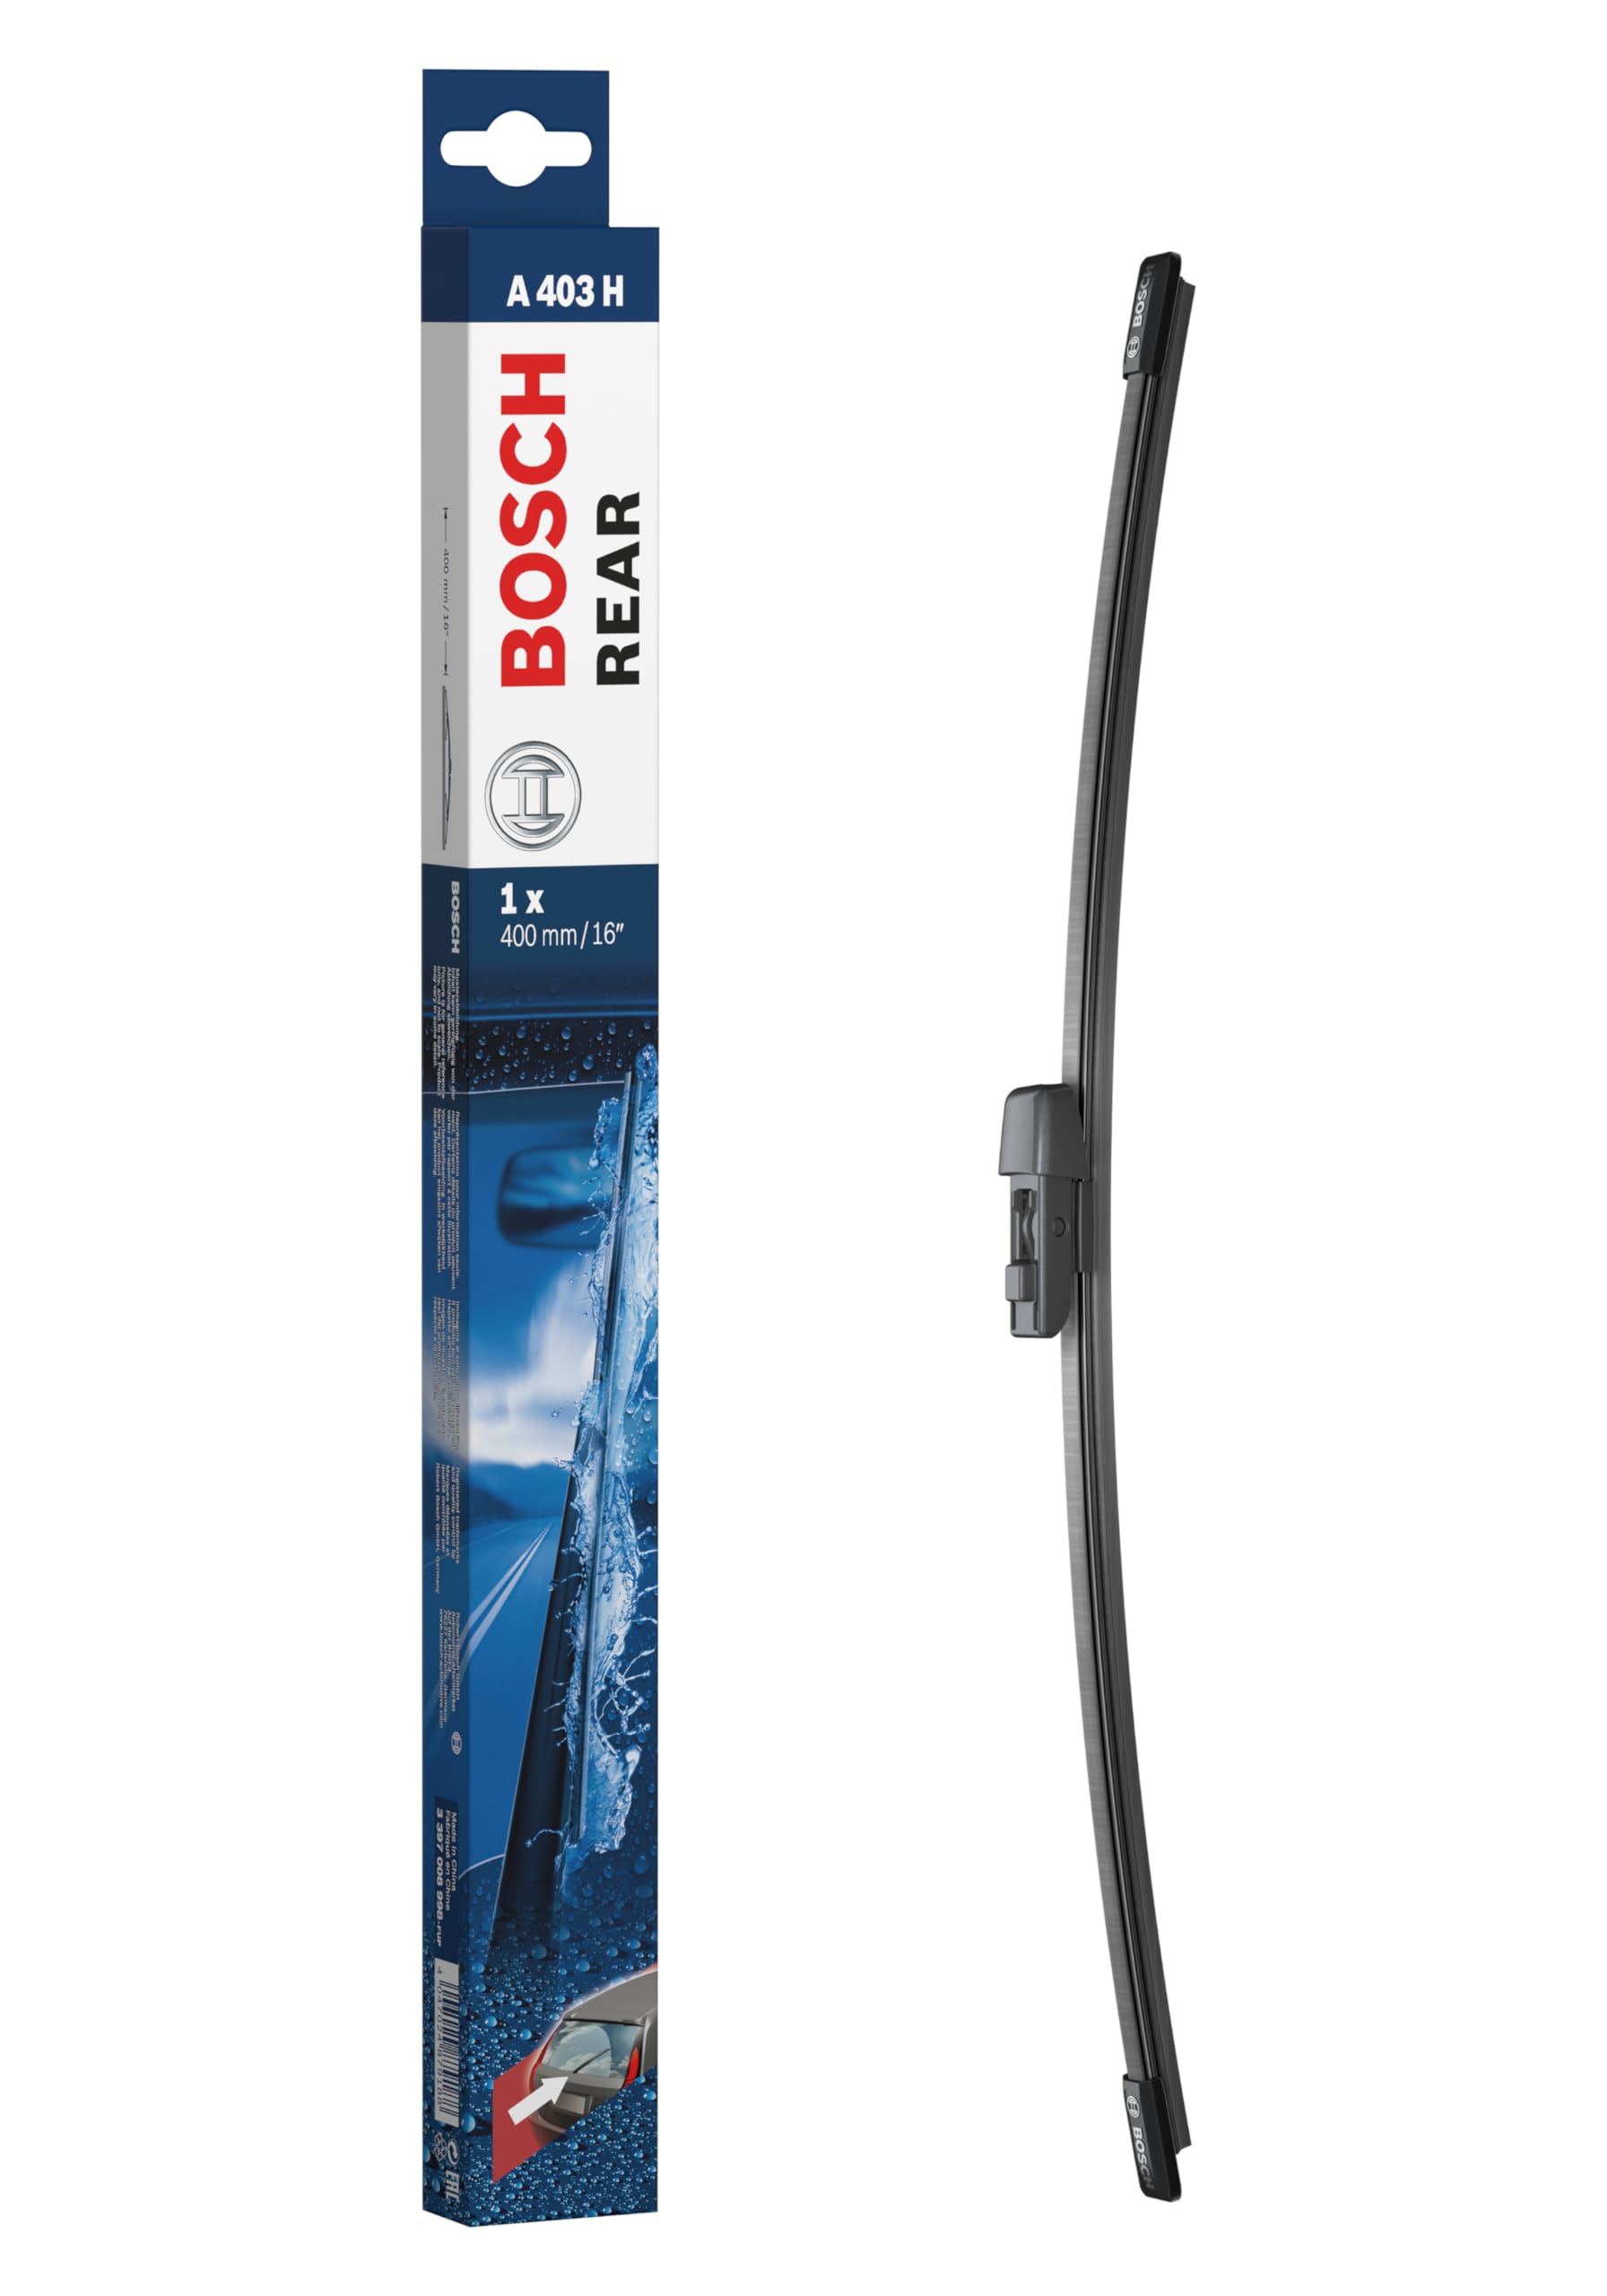 Bosch Scheibenwischer Rear A403H, Länge: 400mm – Scheibenwischer für Heckscheibe von Bosch Automotive